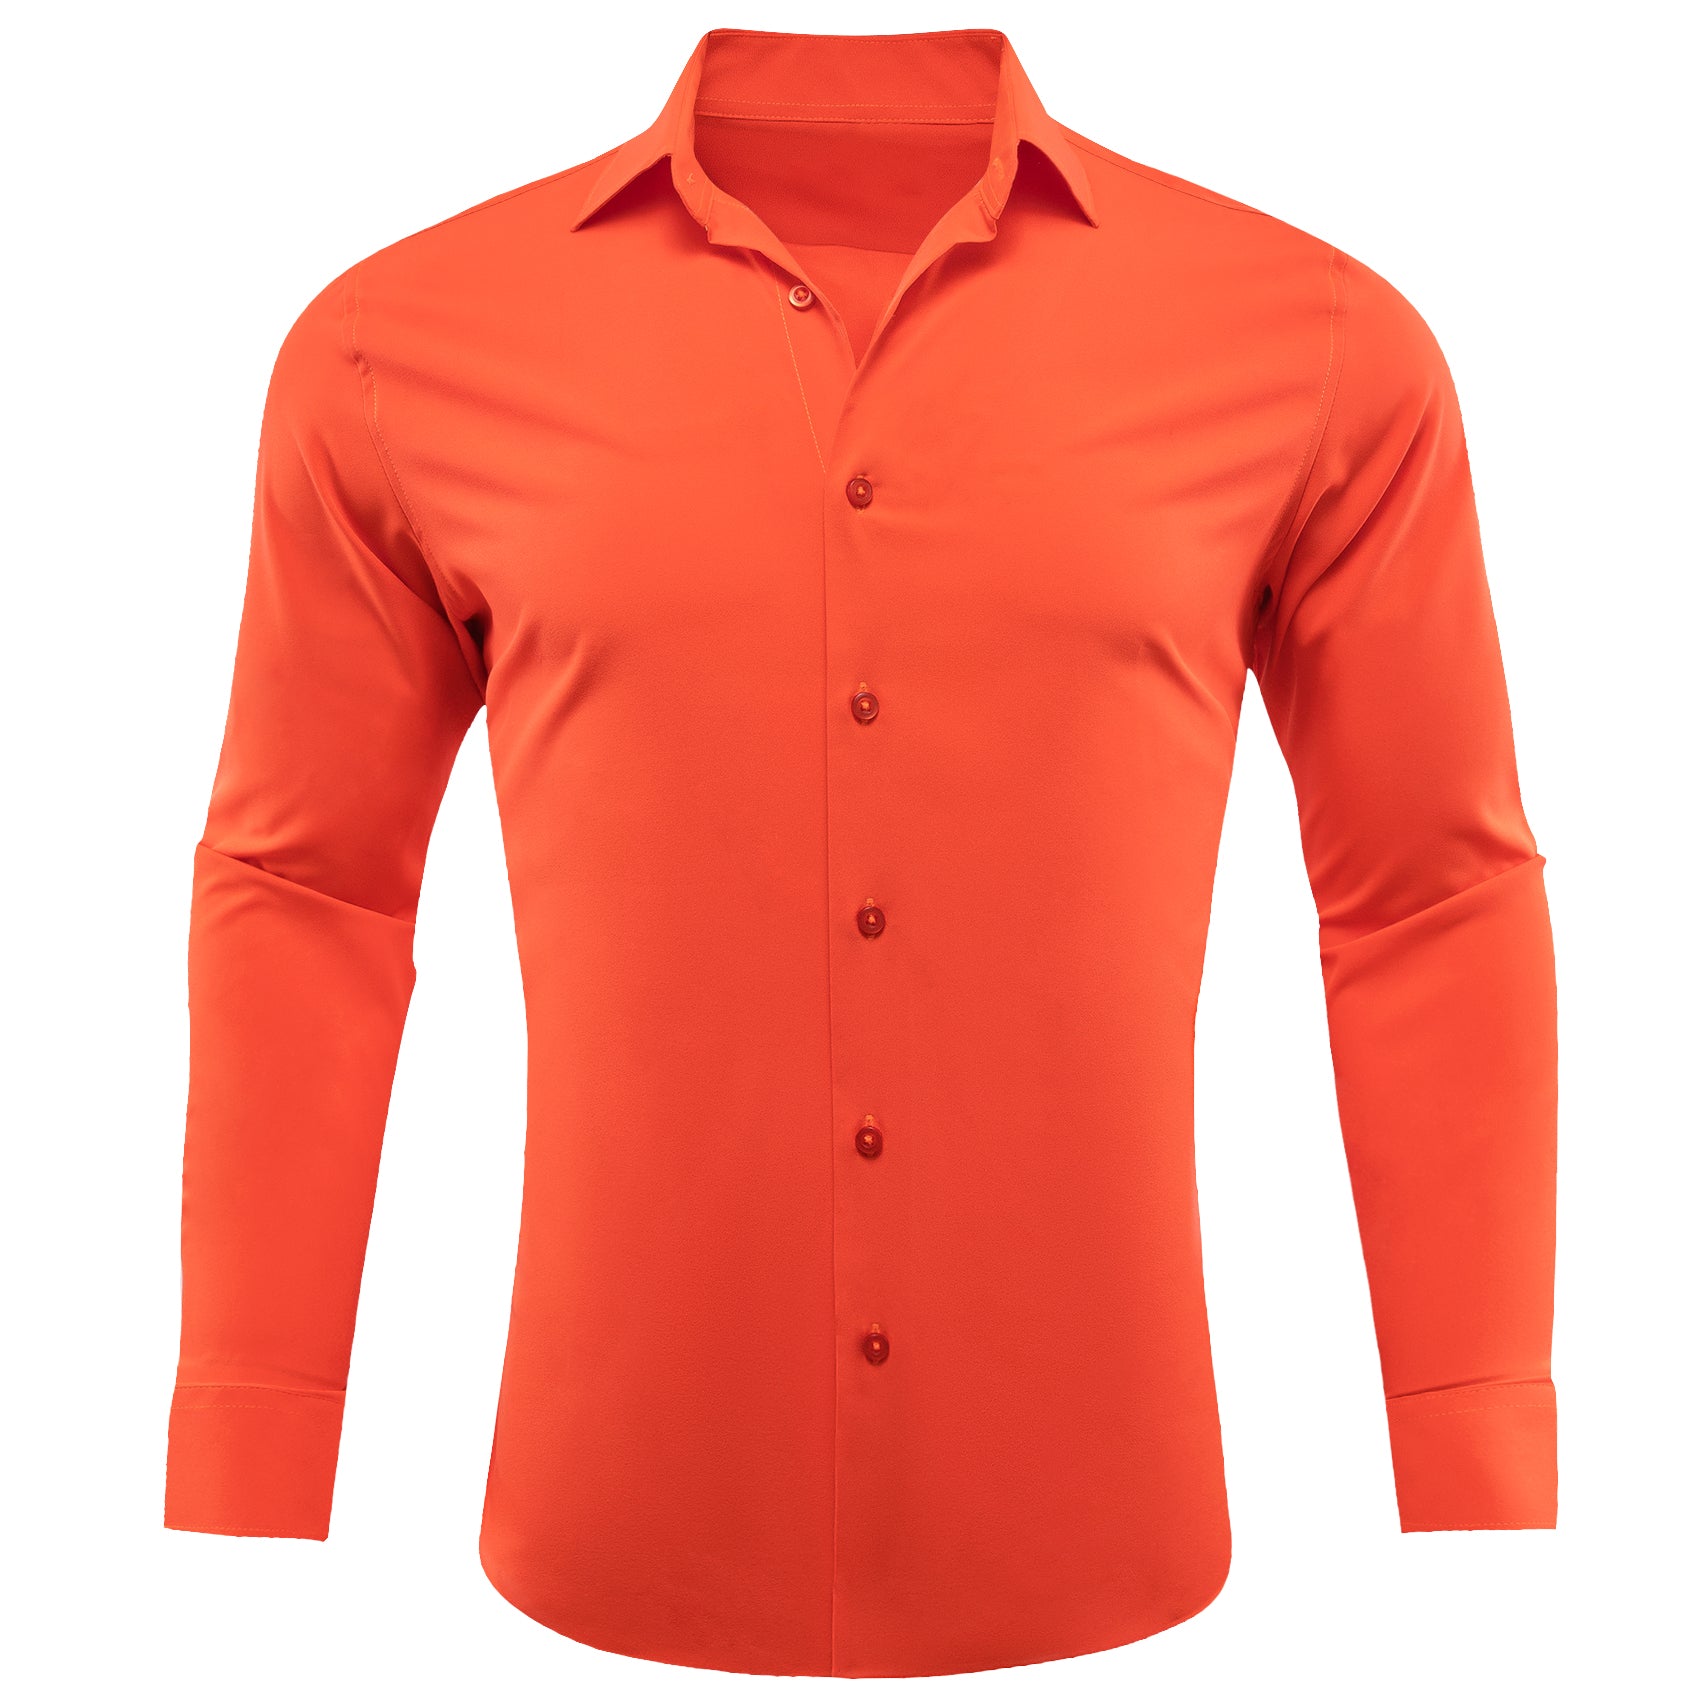 Barry.wang Orangered Solid Silk Shirt